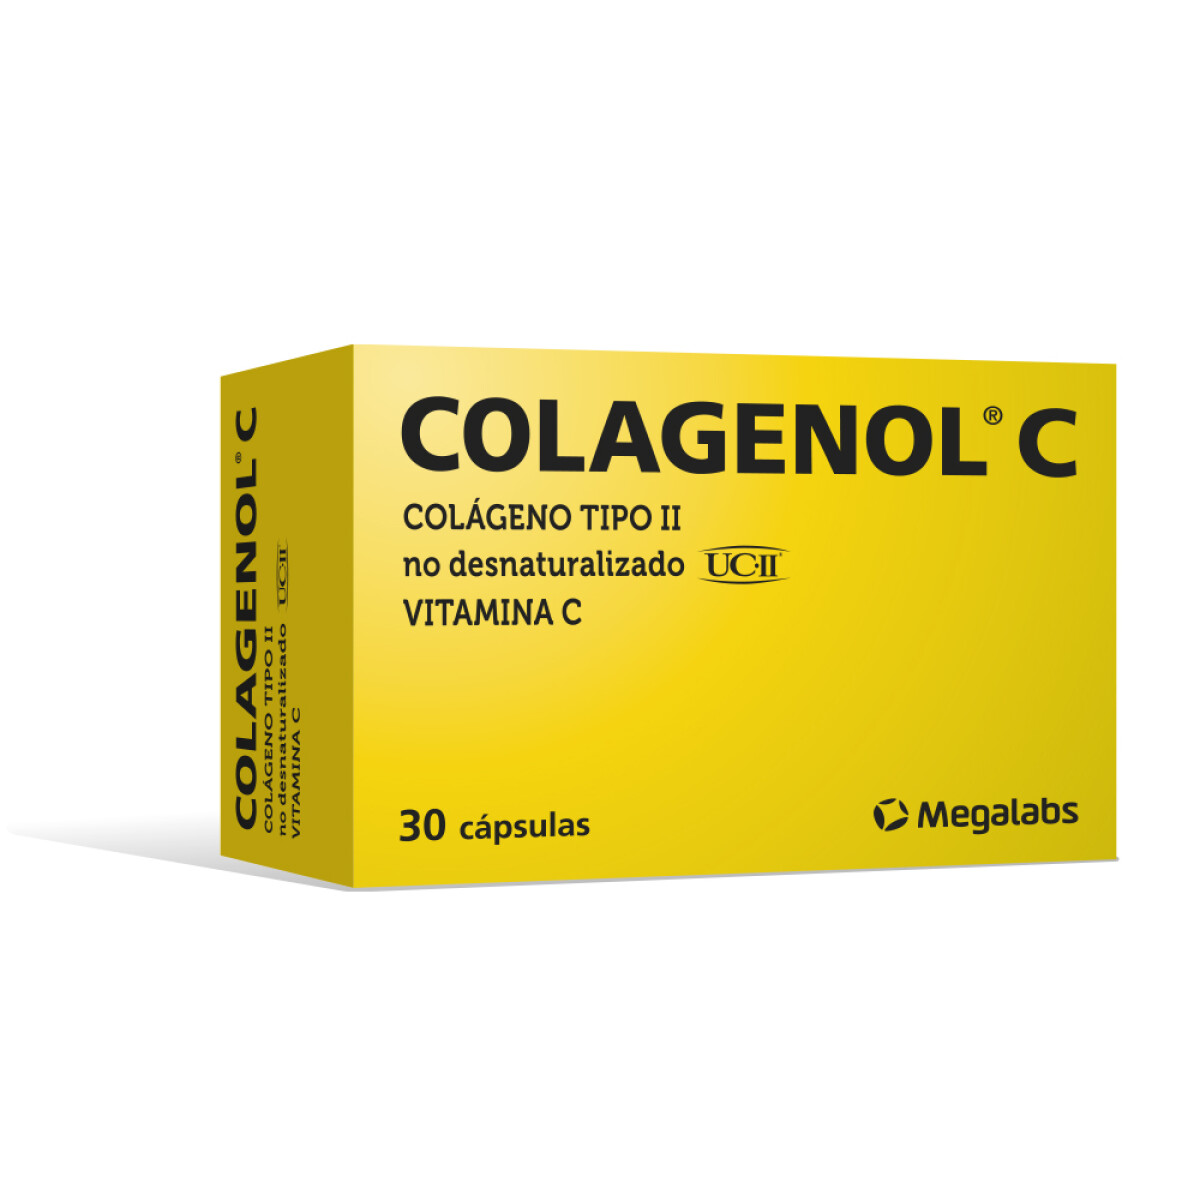 COLAGENOL C 30 CAPSULAS 